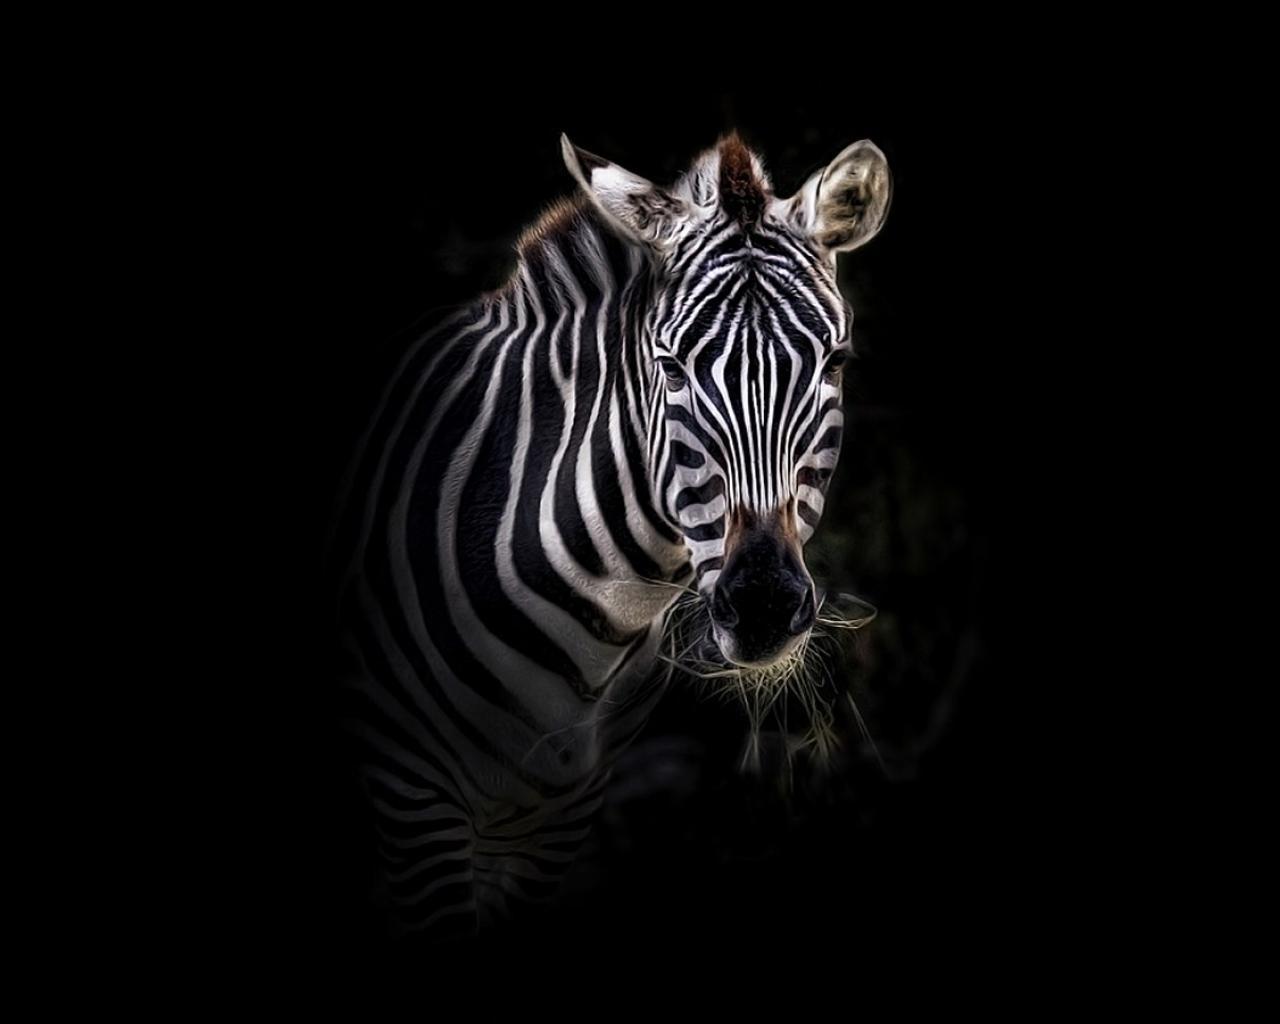 Zebra Wallpapers - Top Free Zebra Backgrounds ...